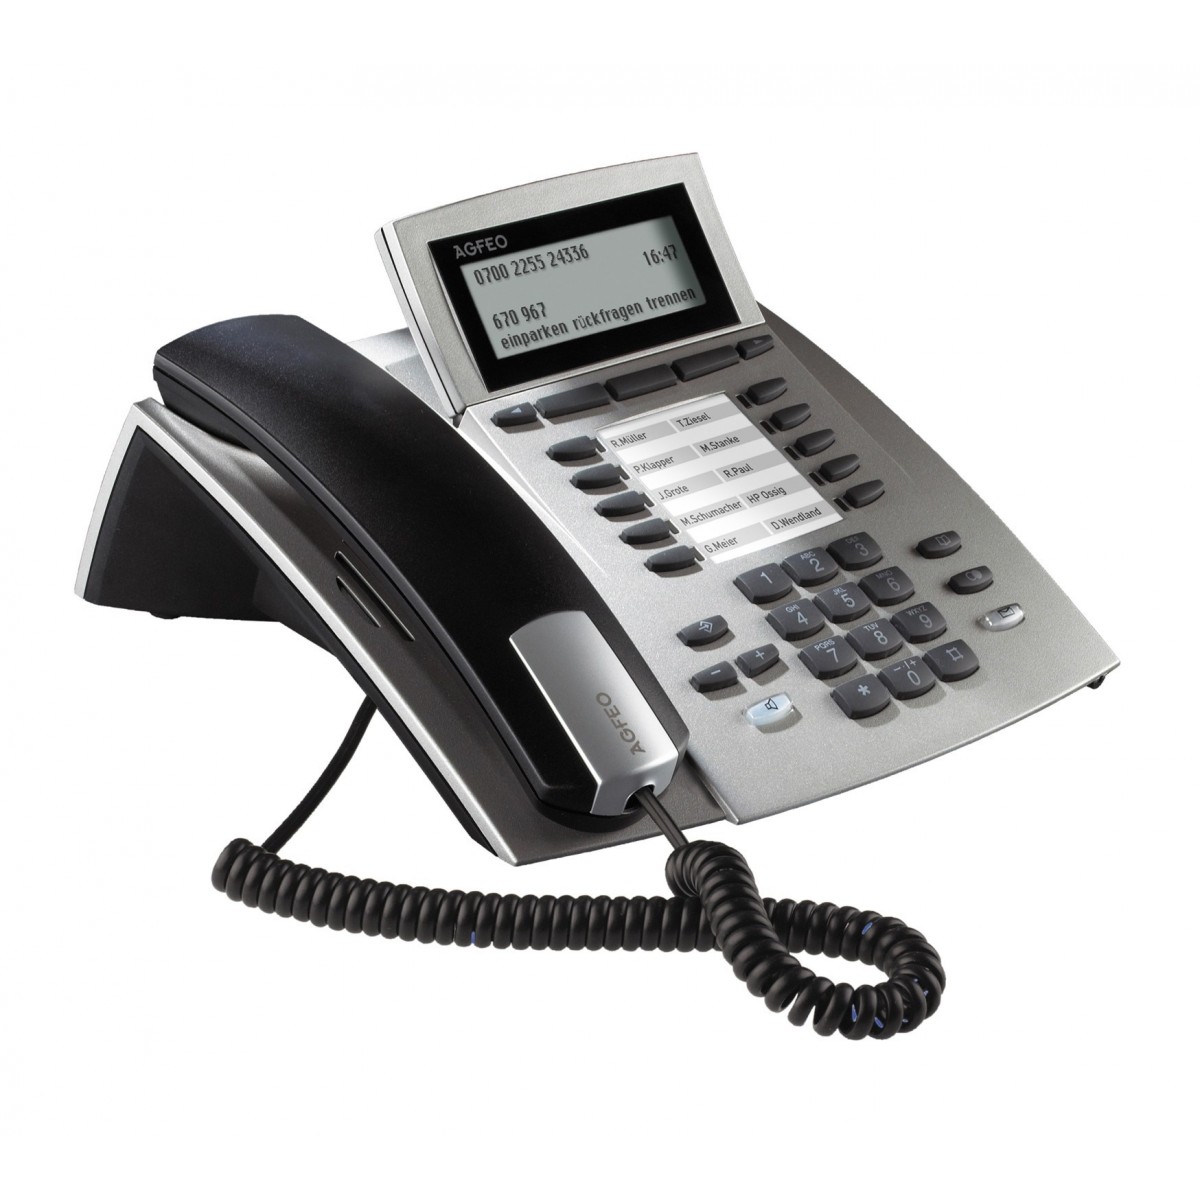 AGFEO ST 42 - Analoges Telefon - 1000 Eintragungen - Anrufer-Identifikation - Silber